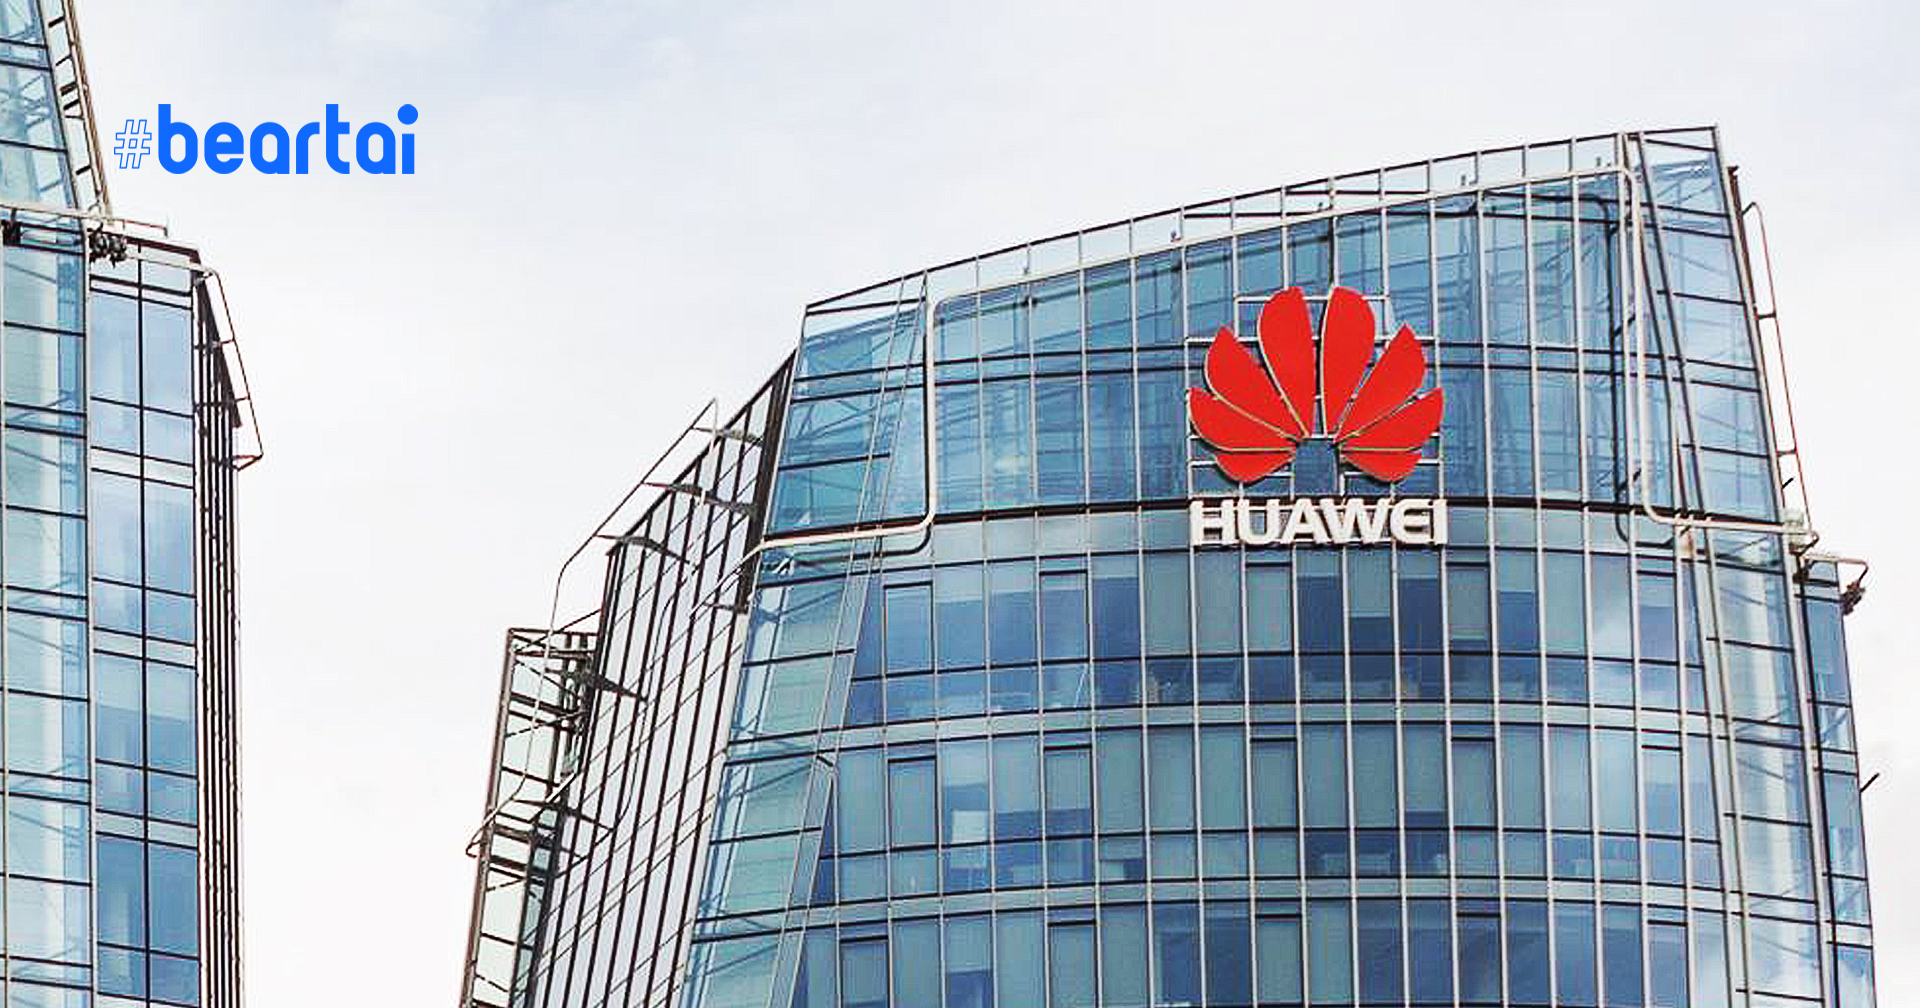 สื่อรายงาน สหรัฐฯ เริ่มอนุญาตบริษัทต่าง ๆ ขายชิ้นส่วนชิปให้ Huawei โดยมีเงื่อนไข